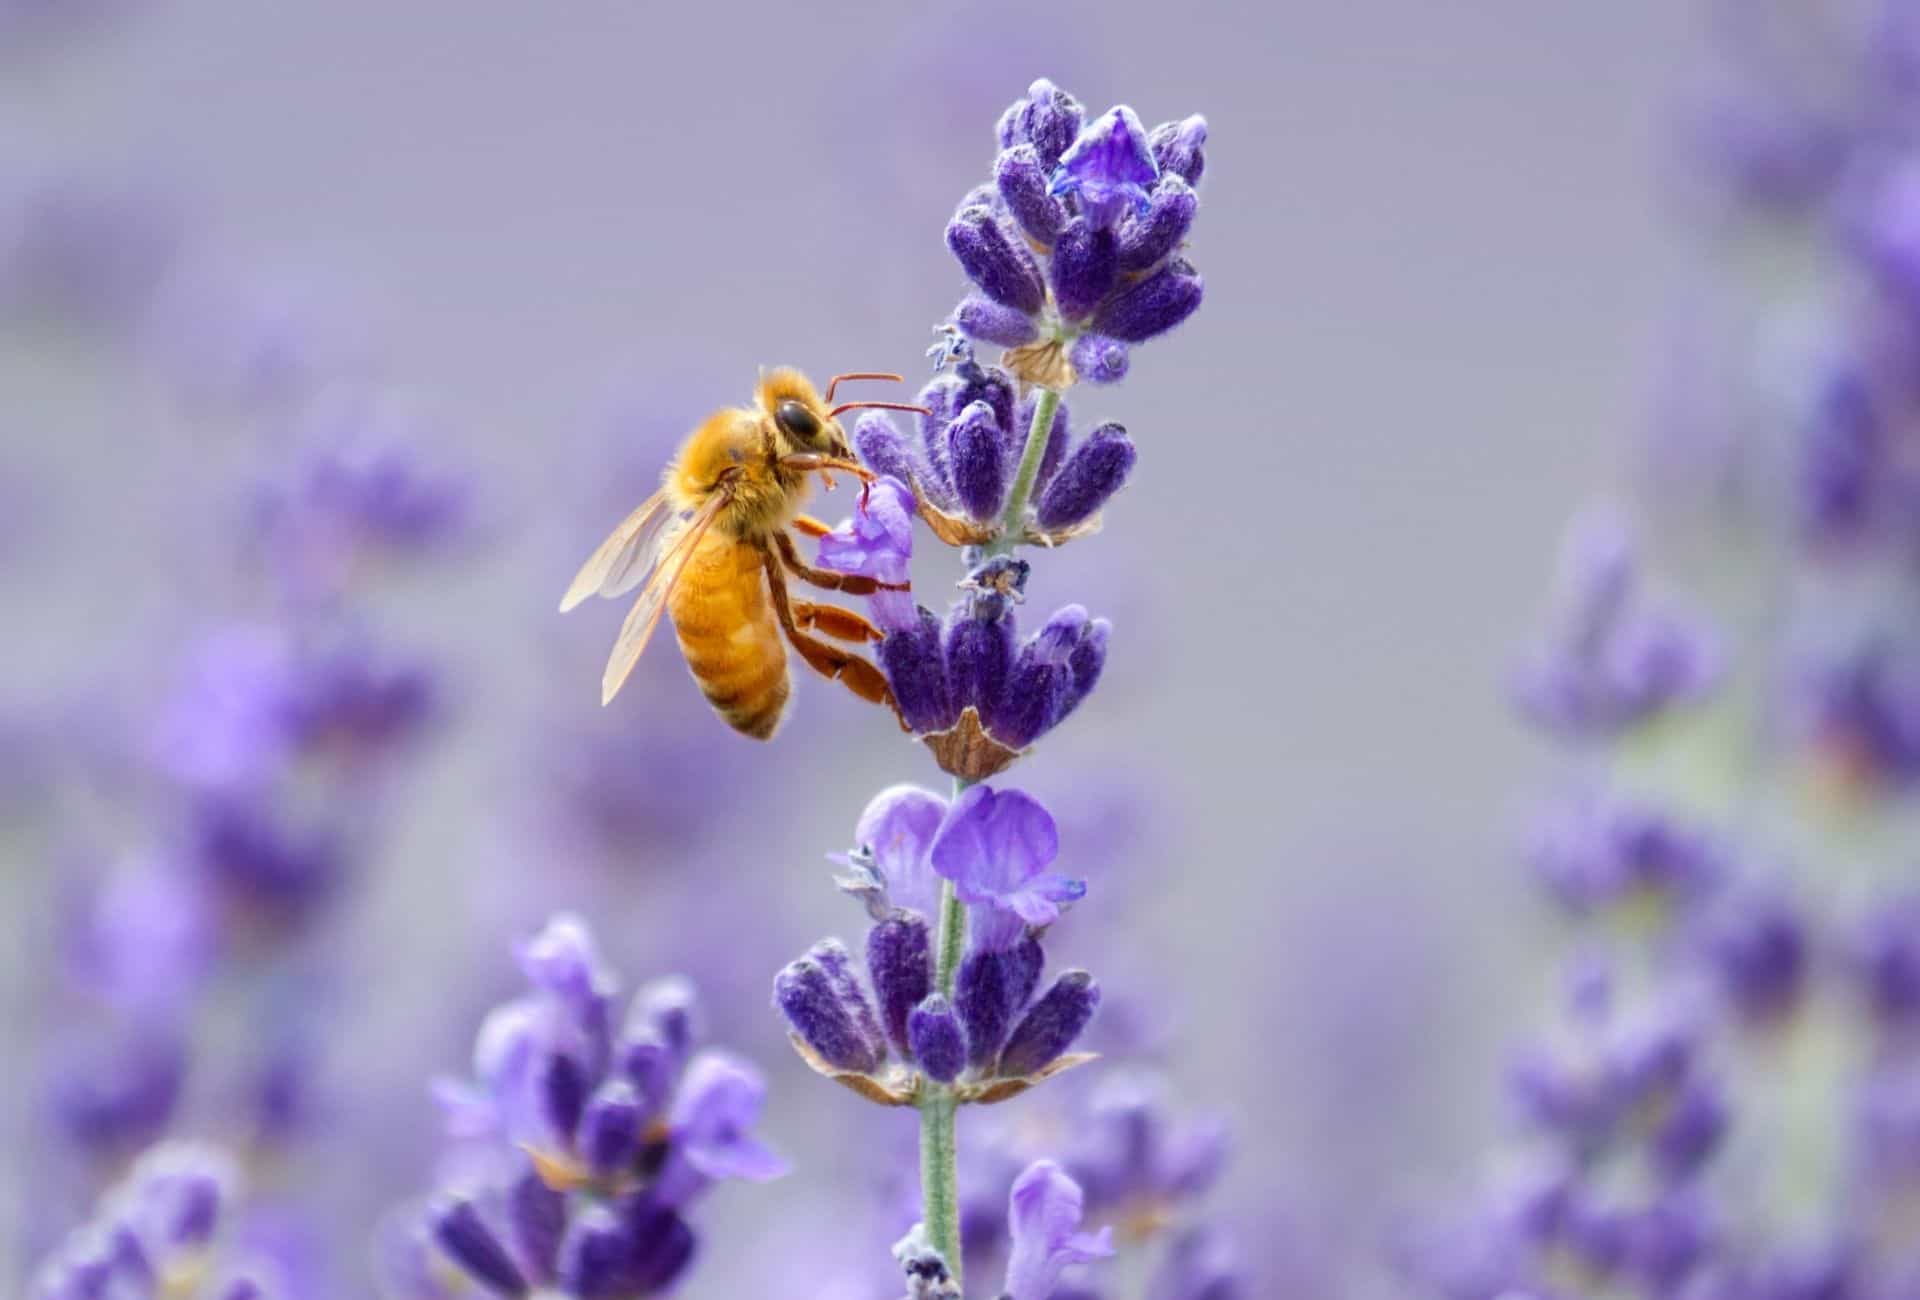 Honeybee on lavender.